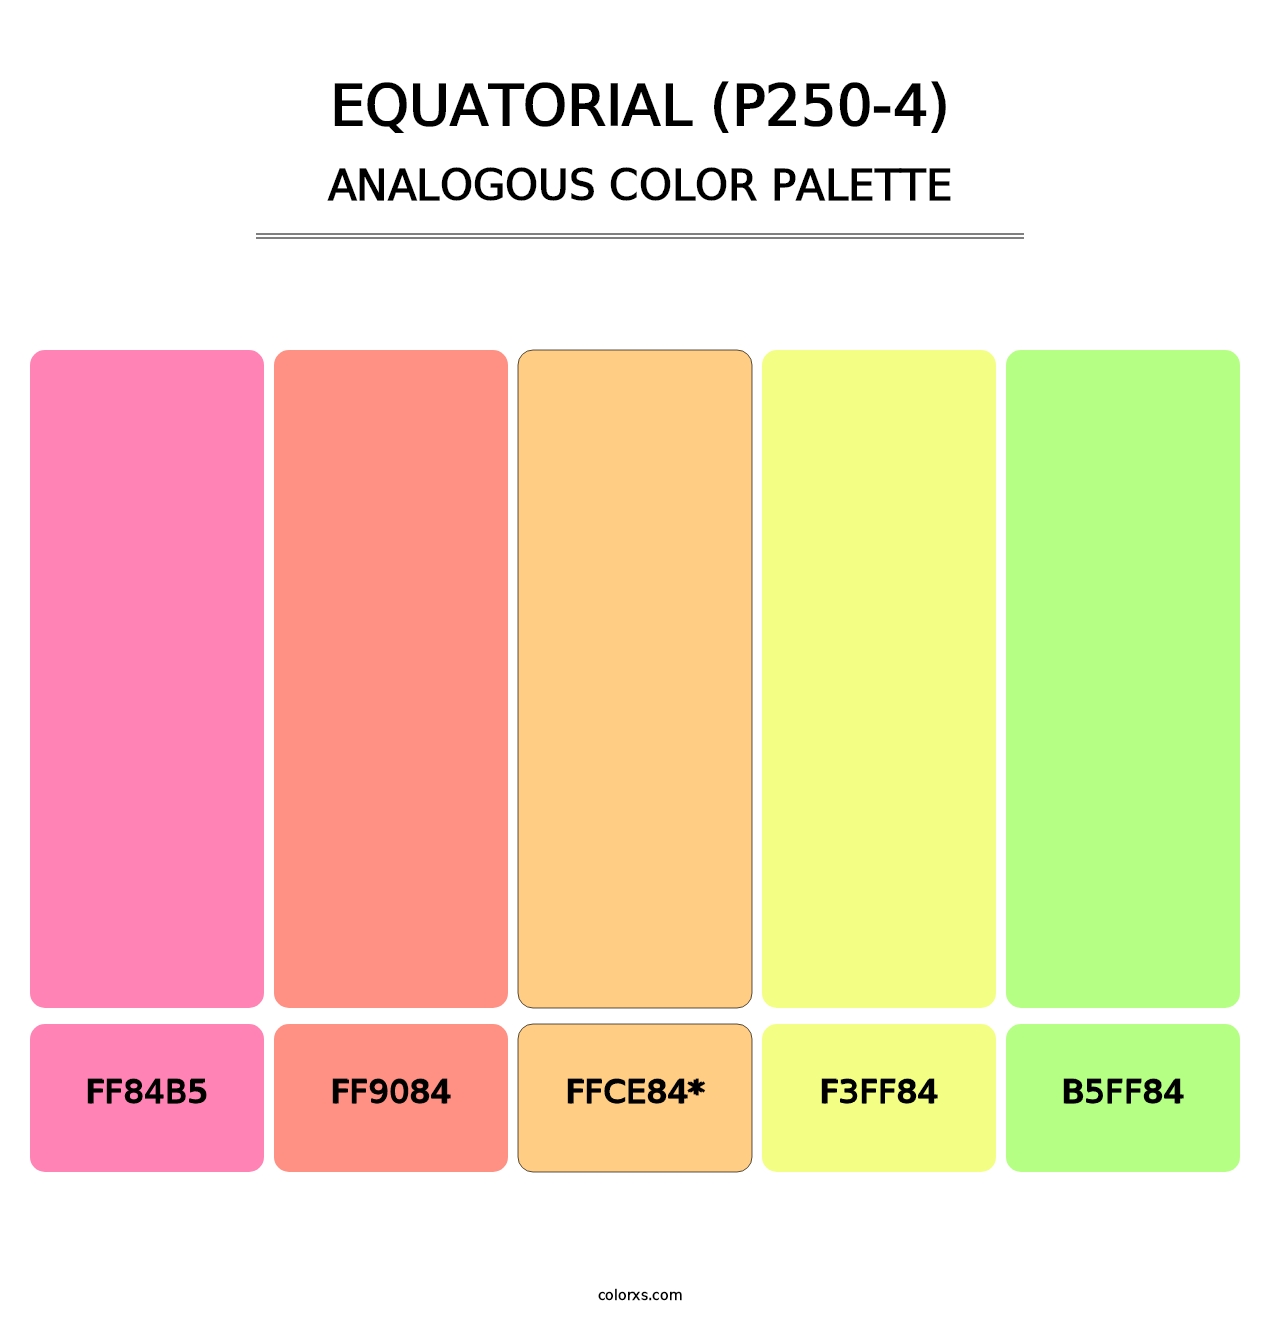 Equatorial (P250-4) - Analogous Color Palette